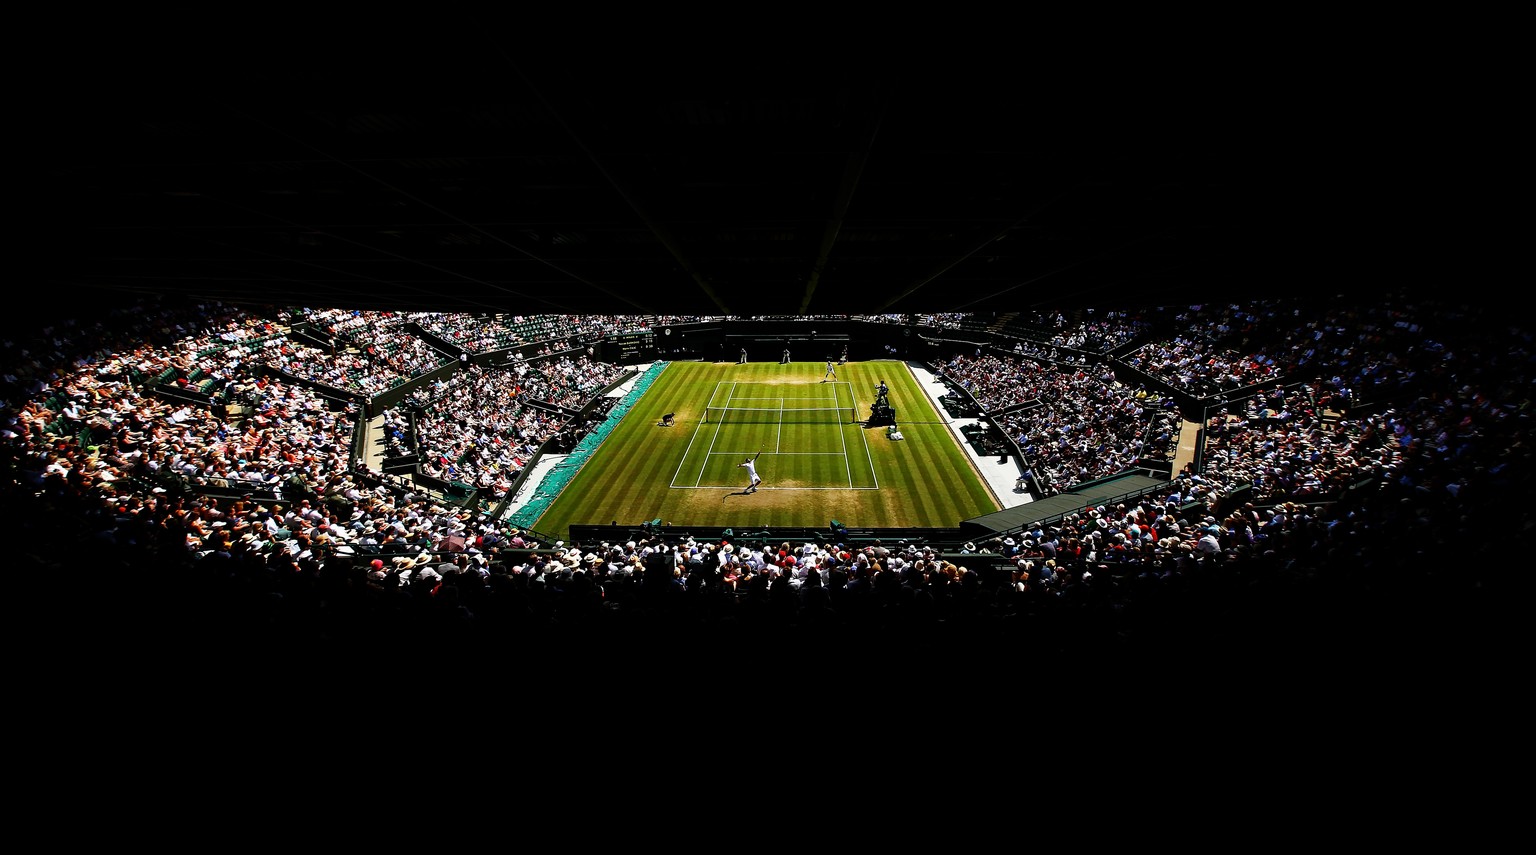 In den nächsten zwei Wochen sind alle Sport-Augen auf Wimbledon gerichtet.